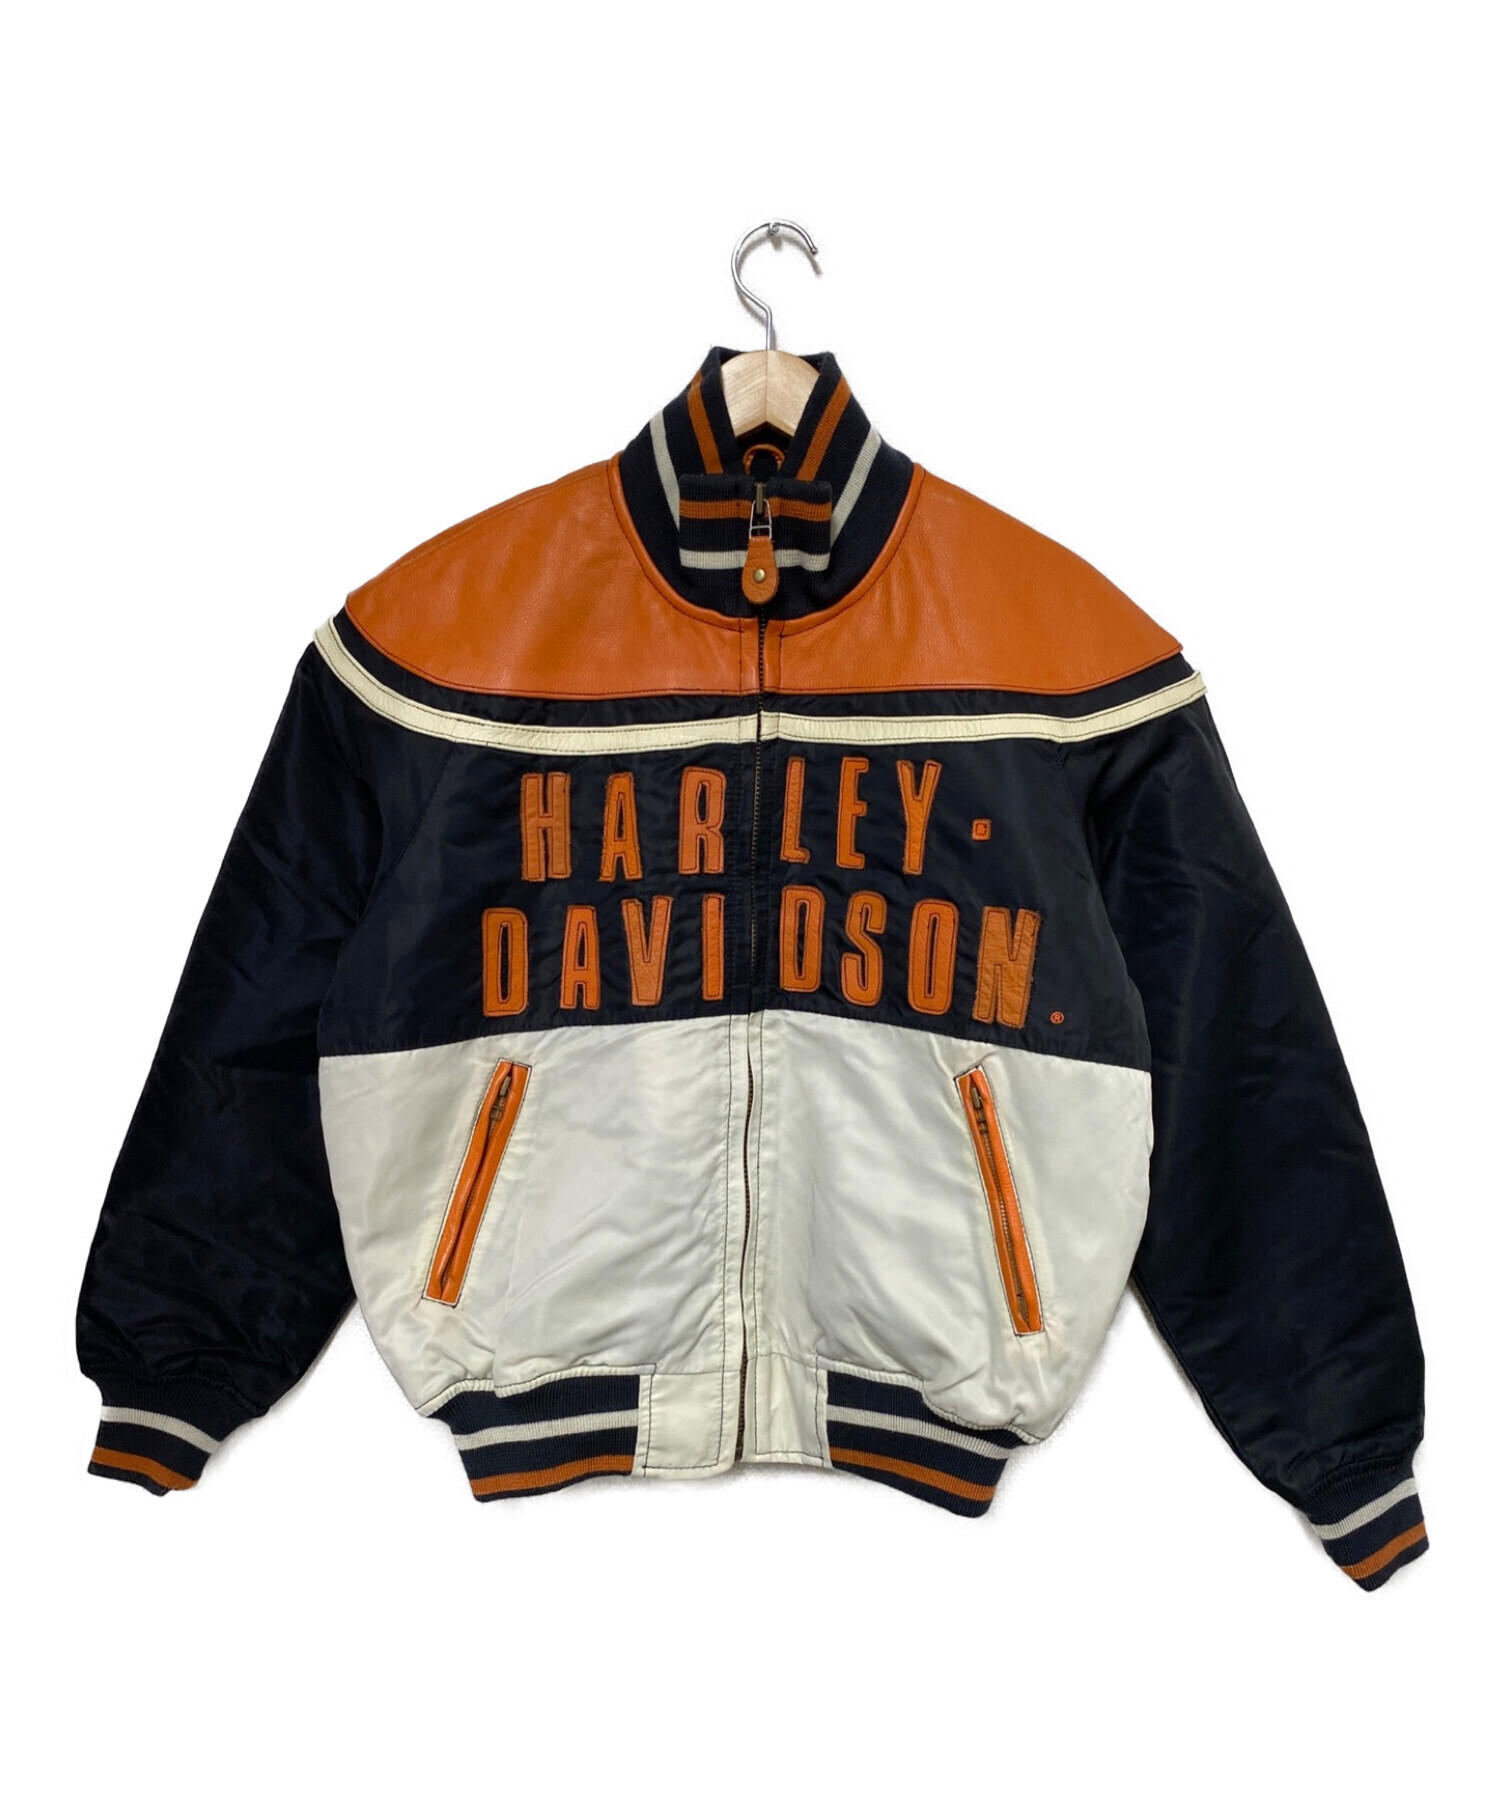 HARLEY-DAVIDSON (ハーレーダビッドソン) ライダースジャケット ブラック×オレンジ サイズ:L